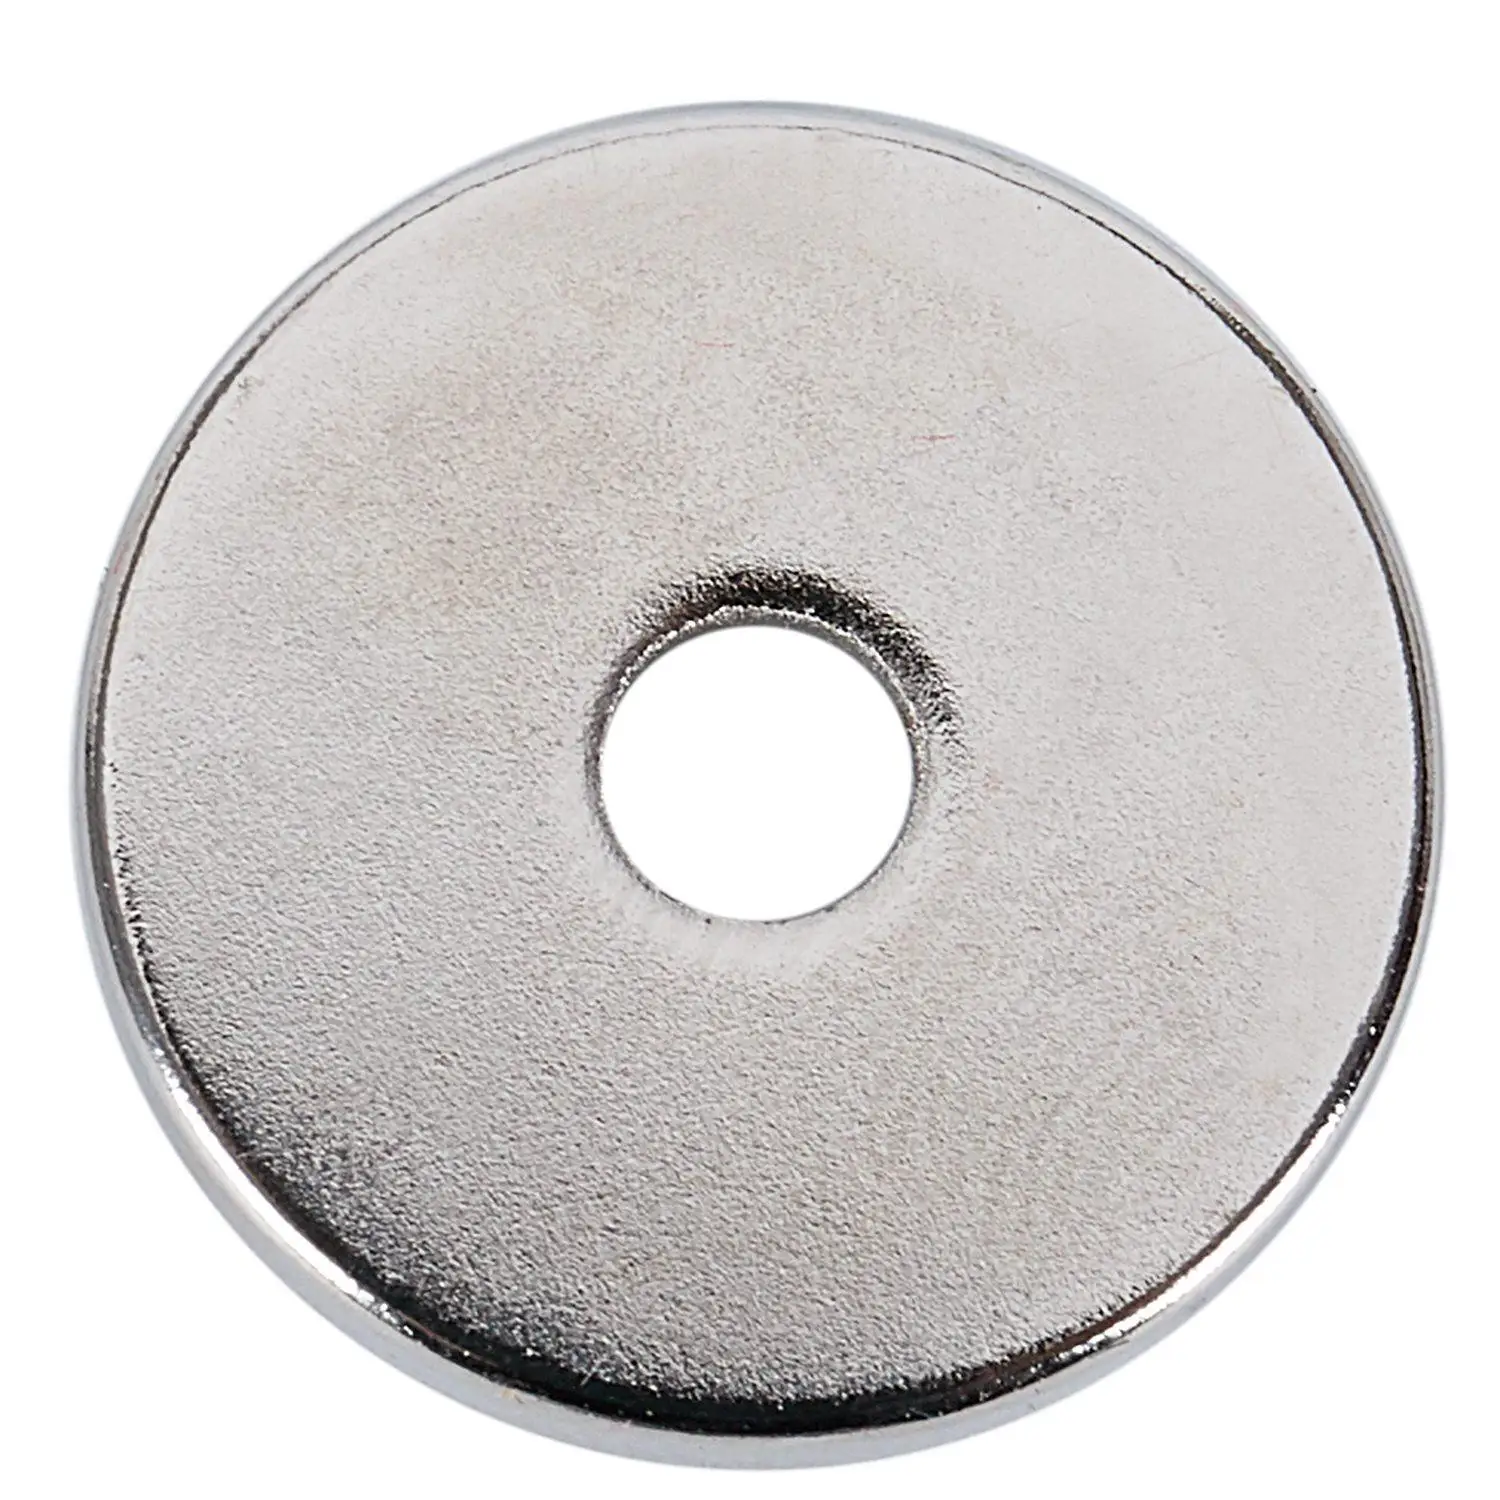 5 шт. N52 неодимовое магнитное кольцо 20x3 мм с 4 мм отверстием маленькие круглые супер мощные сильные магнитные магниты для рукоделия Галлий металл